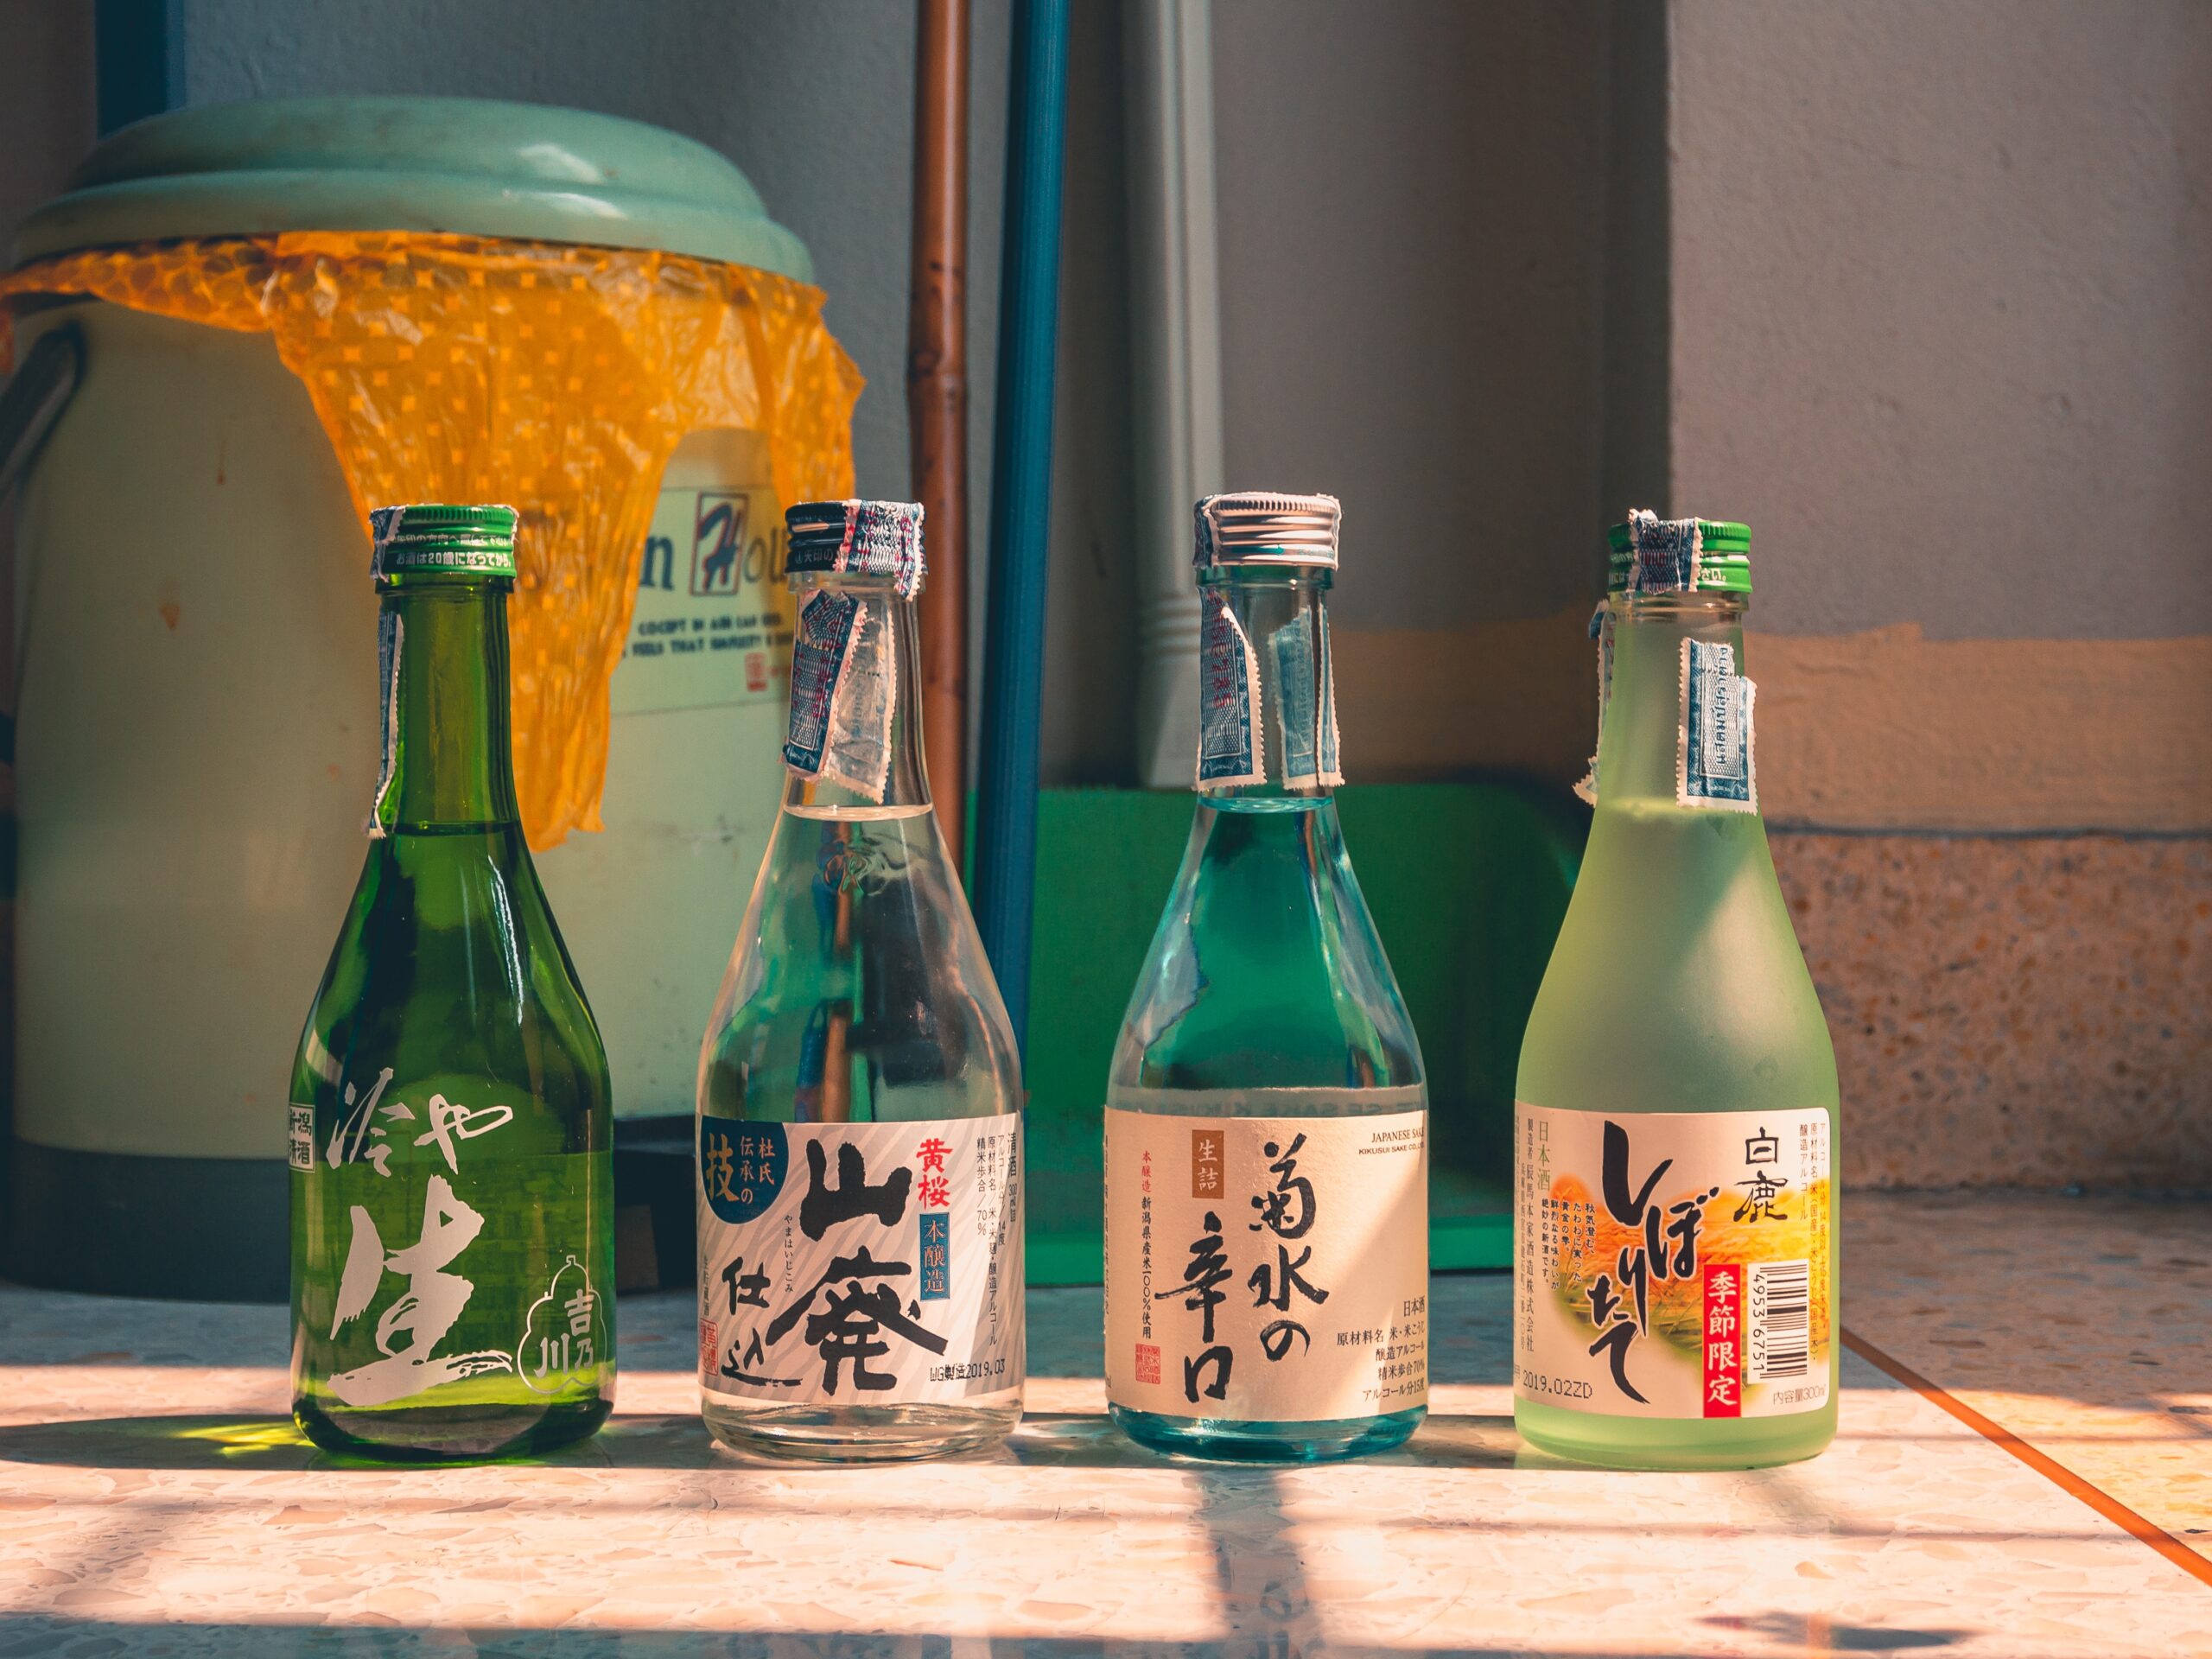 Bottles of sake rice wine